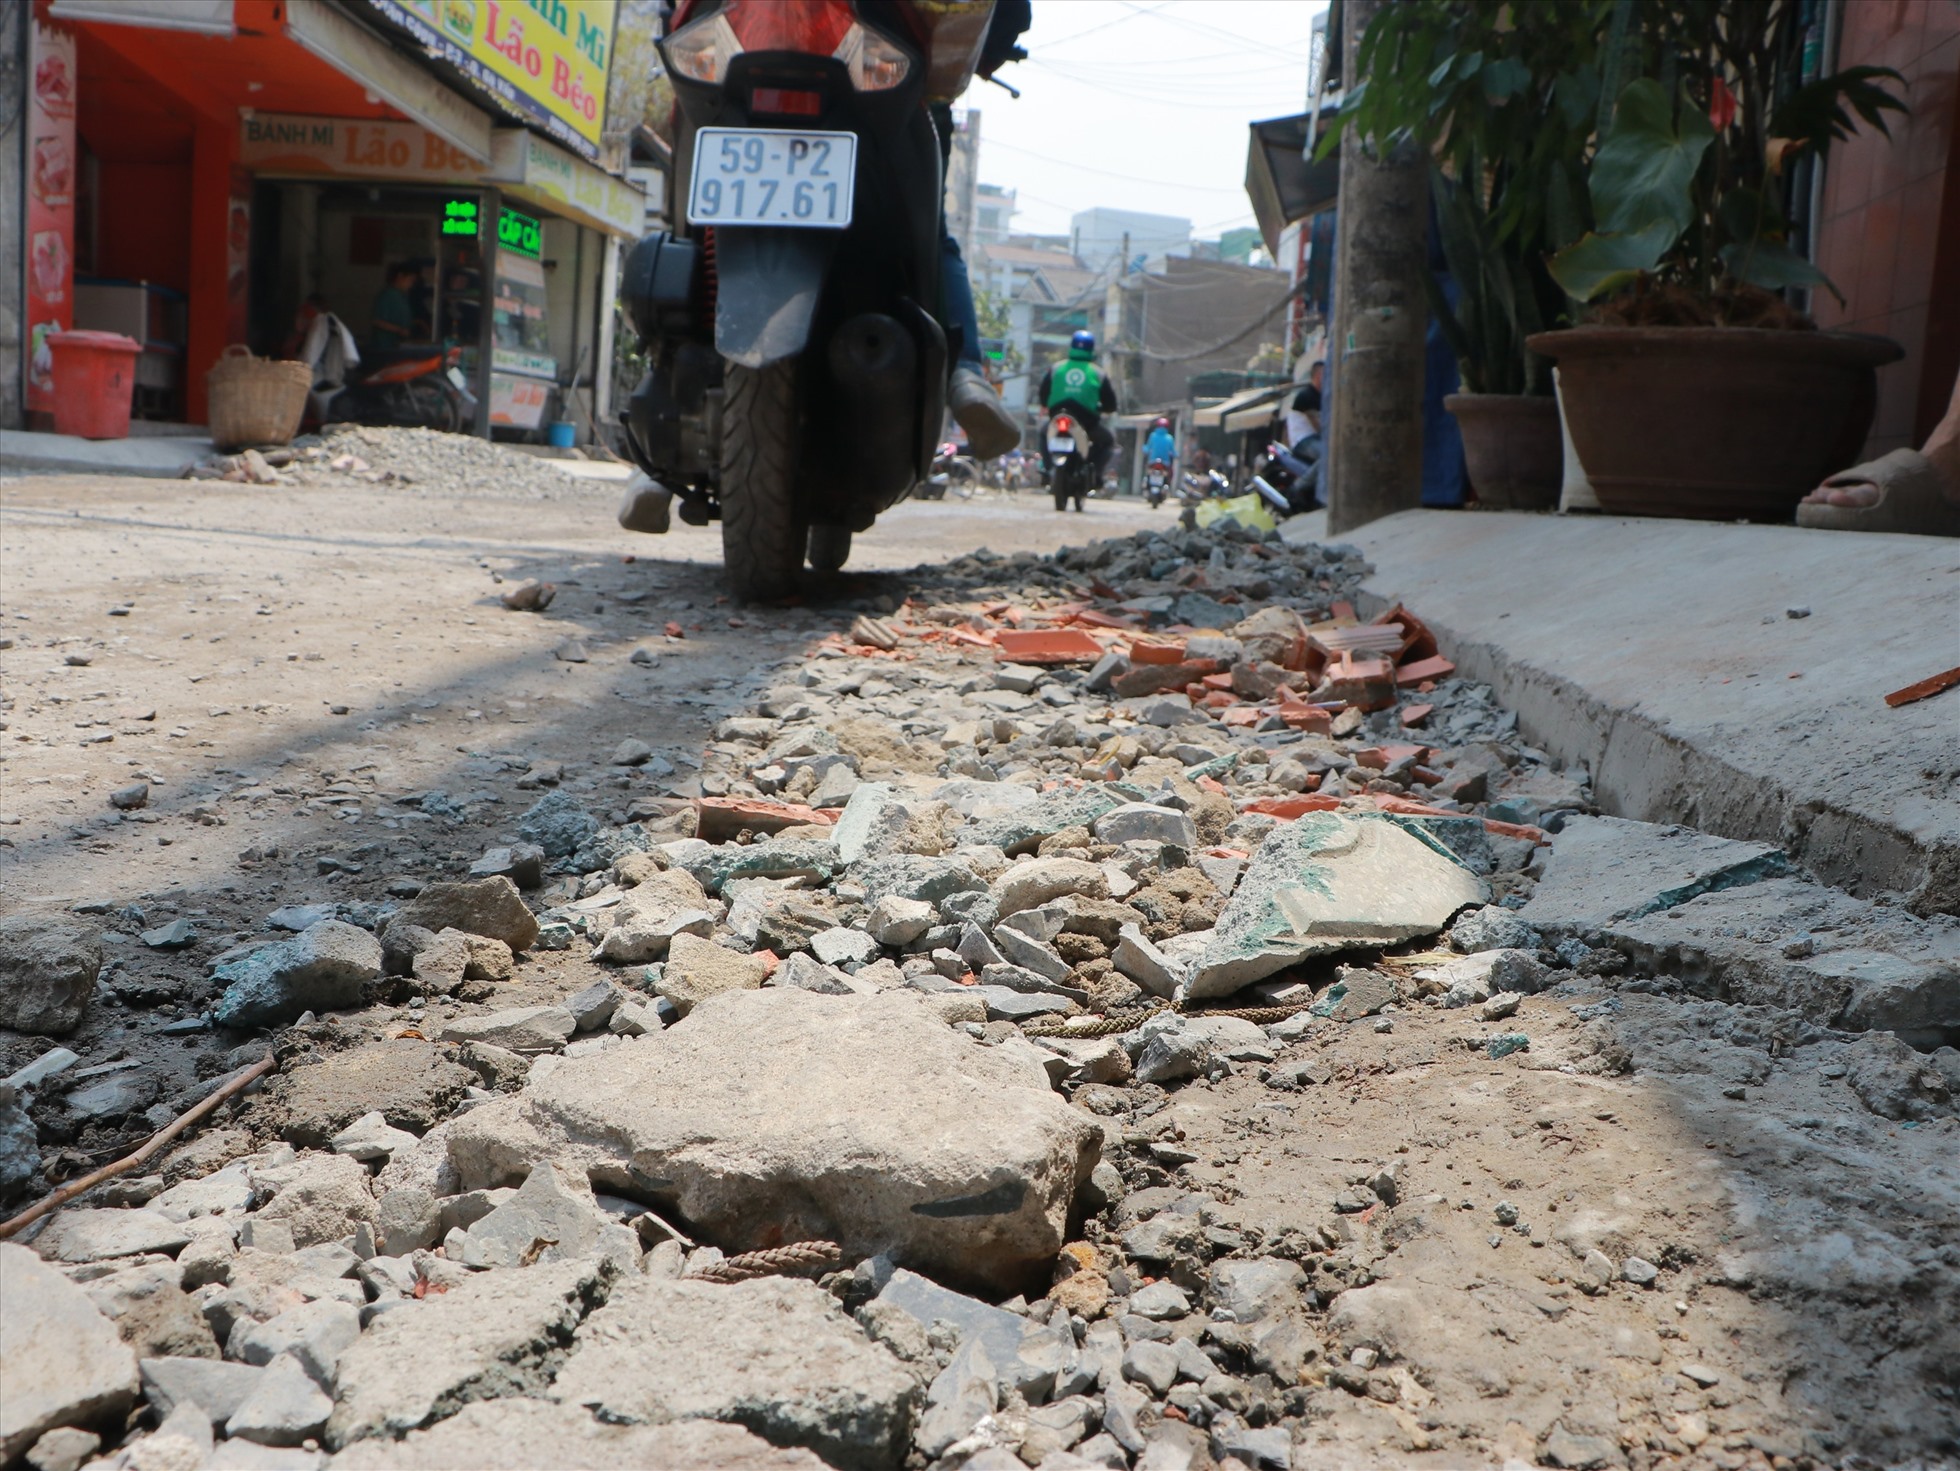 Theo ghi nhận của PV, hiện tại, mặt đường Nguyễn Văn Công vẫn còn rất nhiều đá vụn. Các vật liệu xây dựng lẫn rác thải vẫn còn ngổn ngang trên đường.